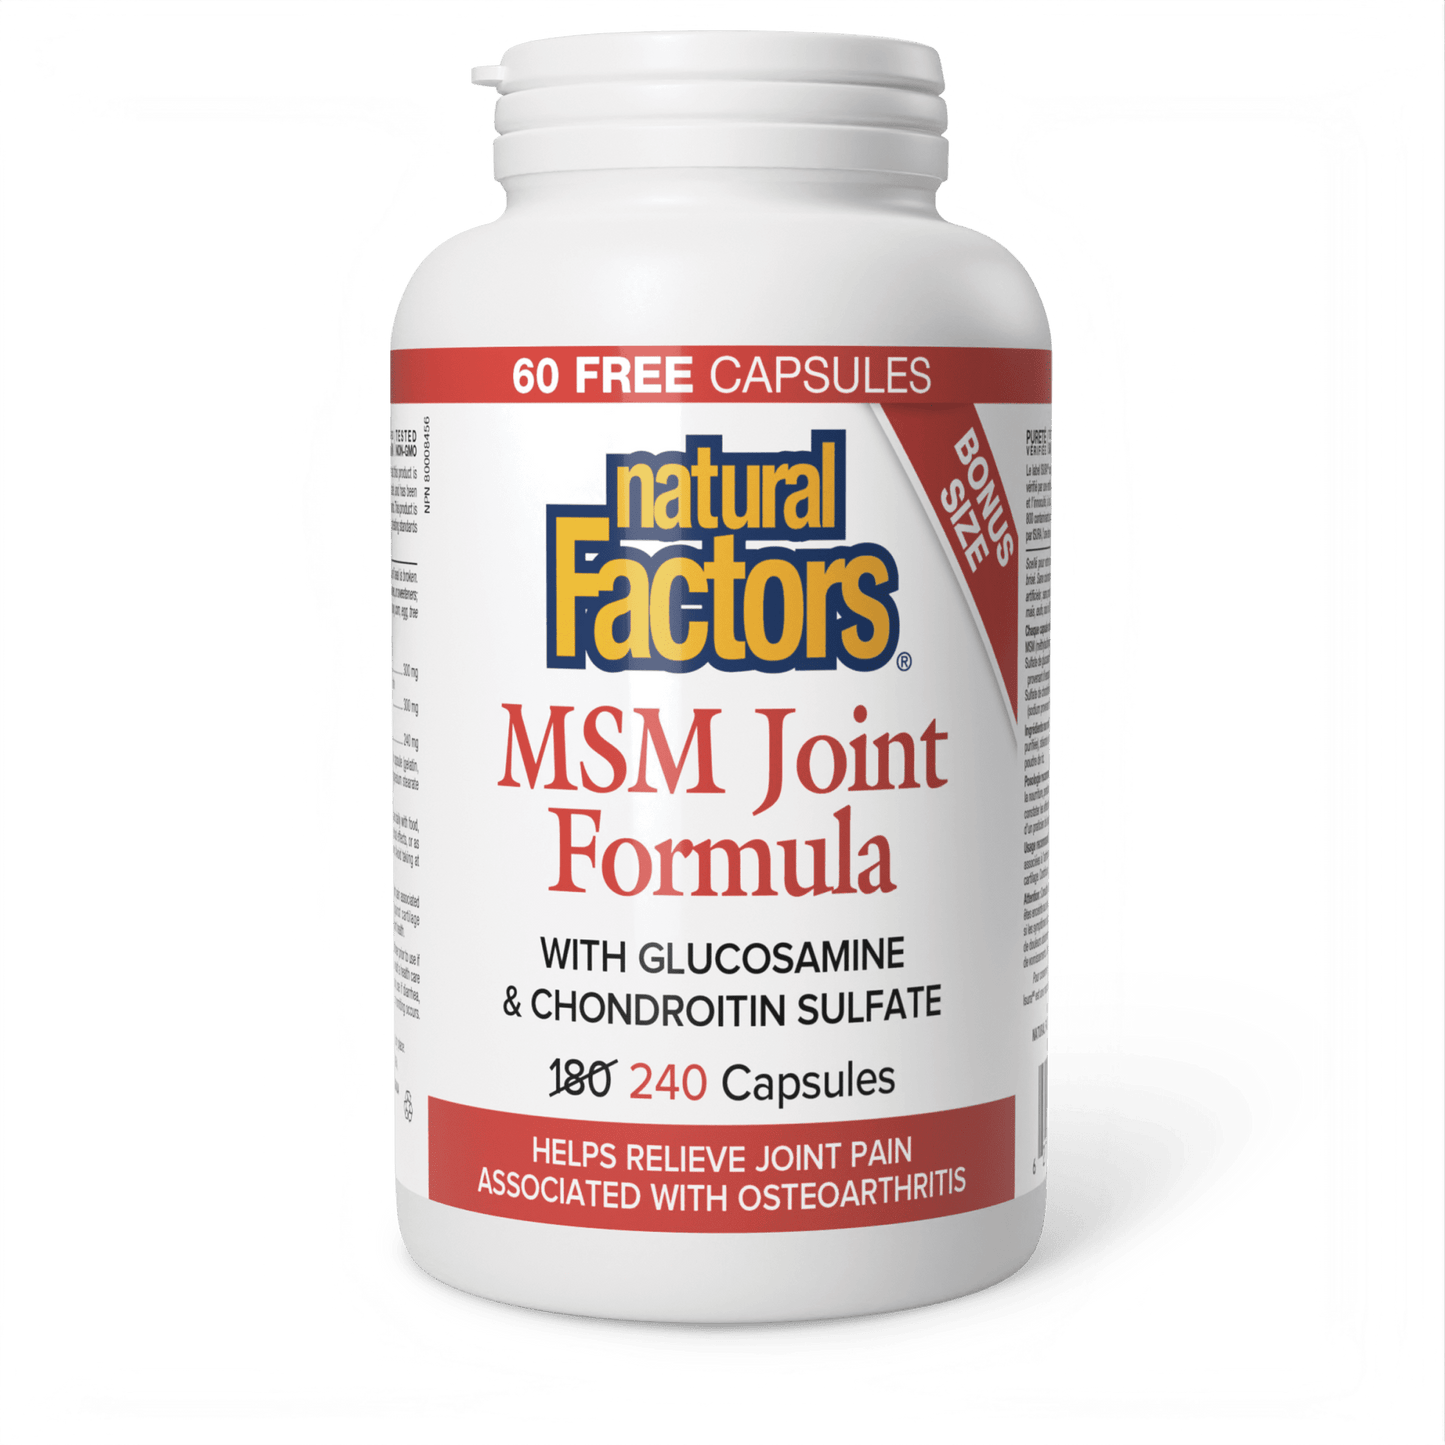 MSM Joint Formula, Natural Factors|v|image|8269